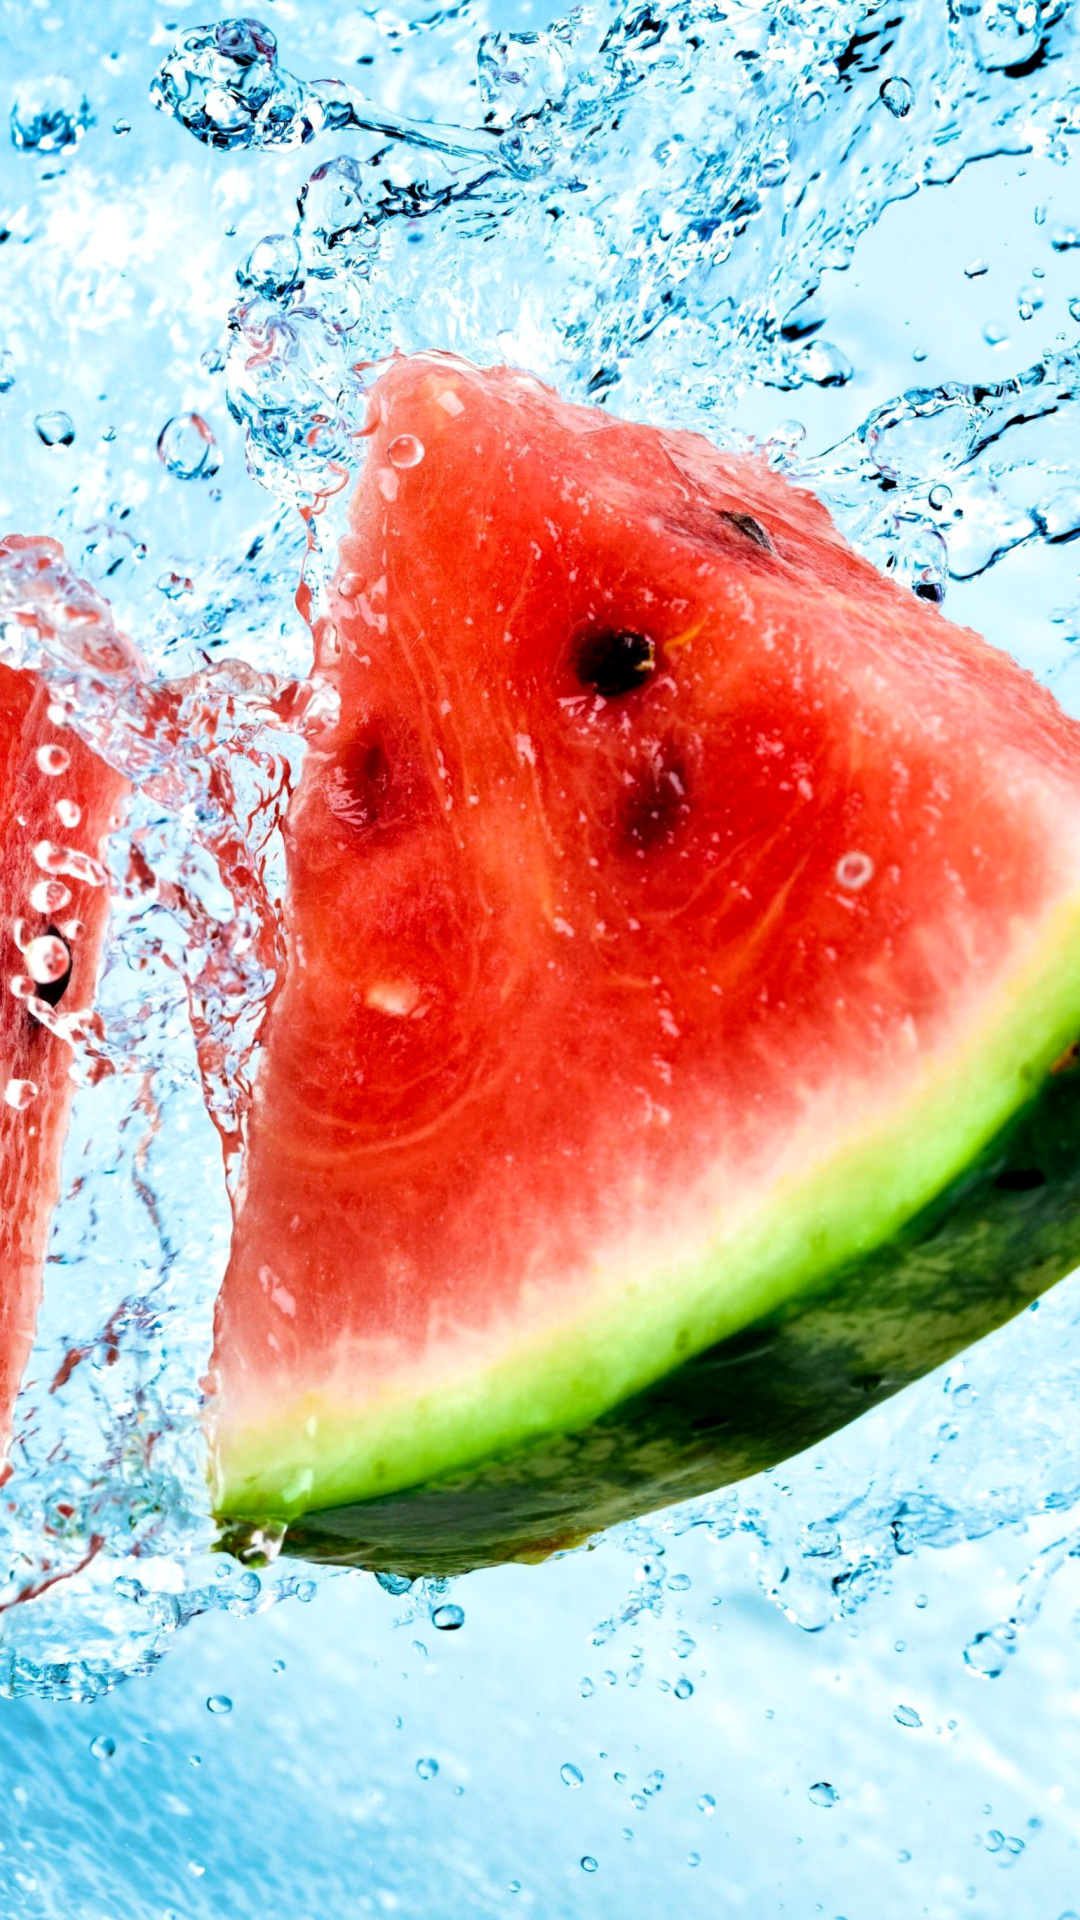 Watermelon Triangle Slices wallpaper 1080x1920